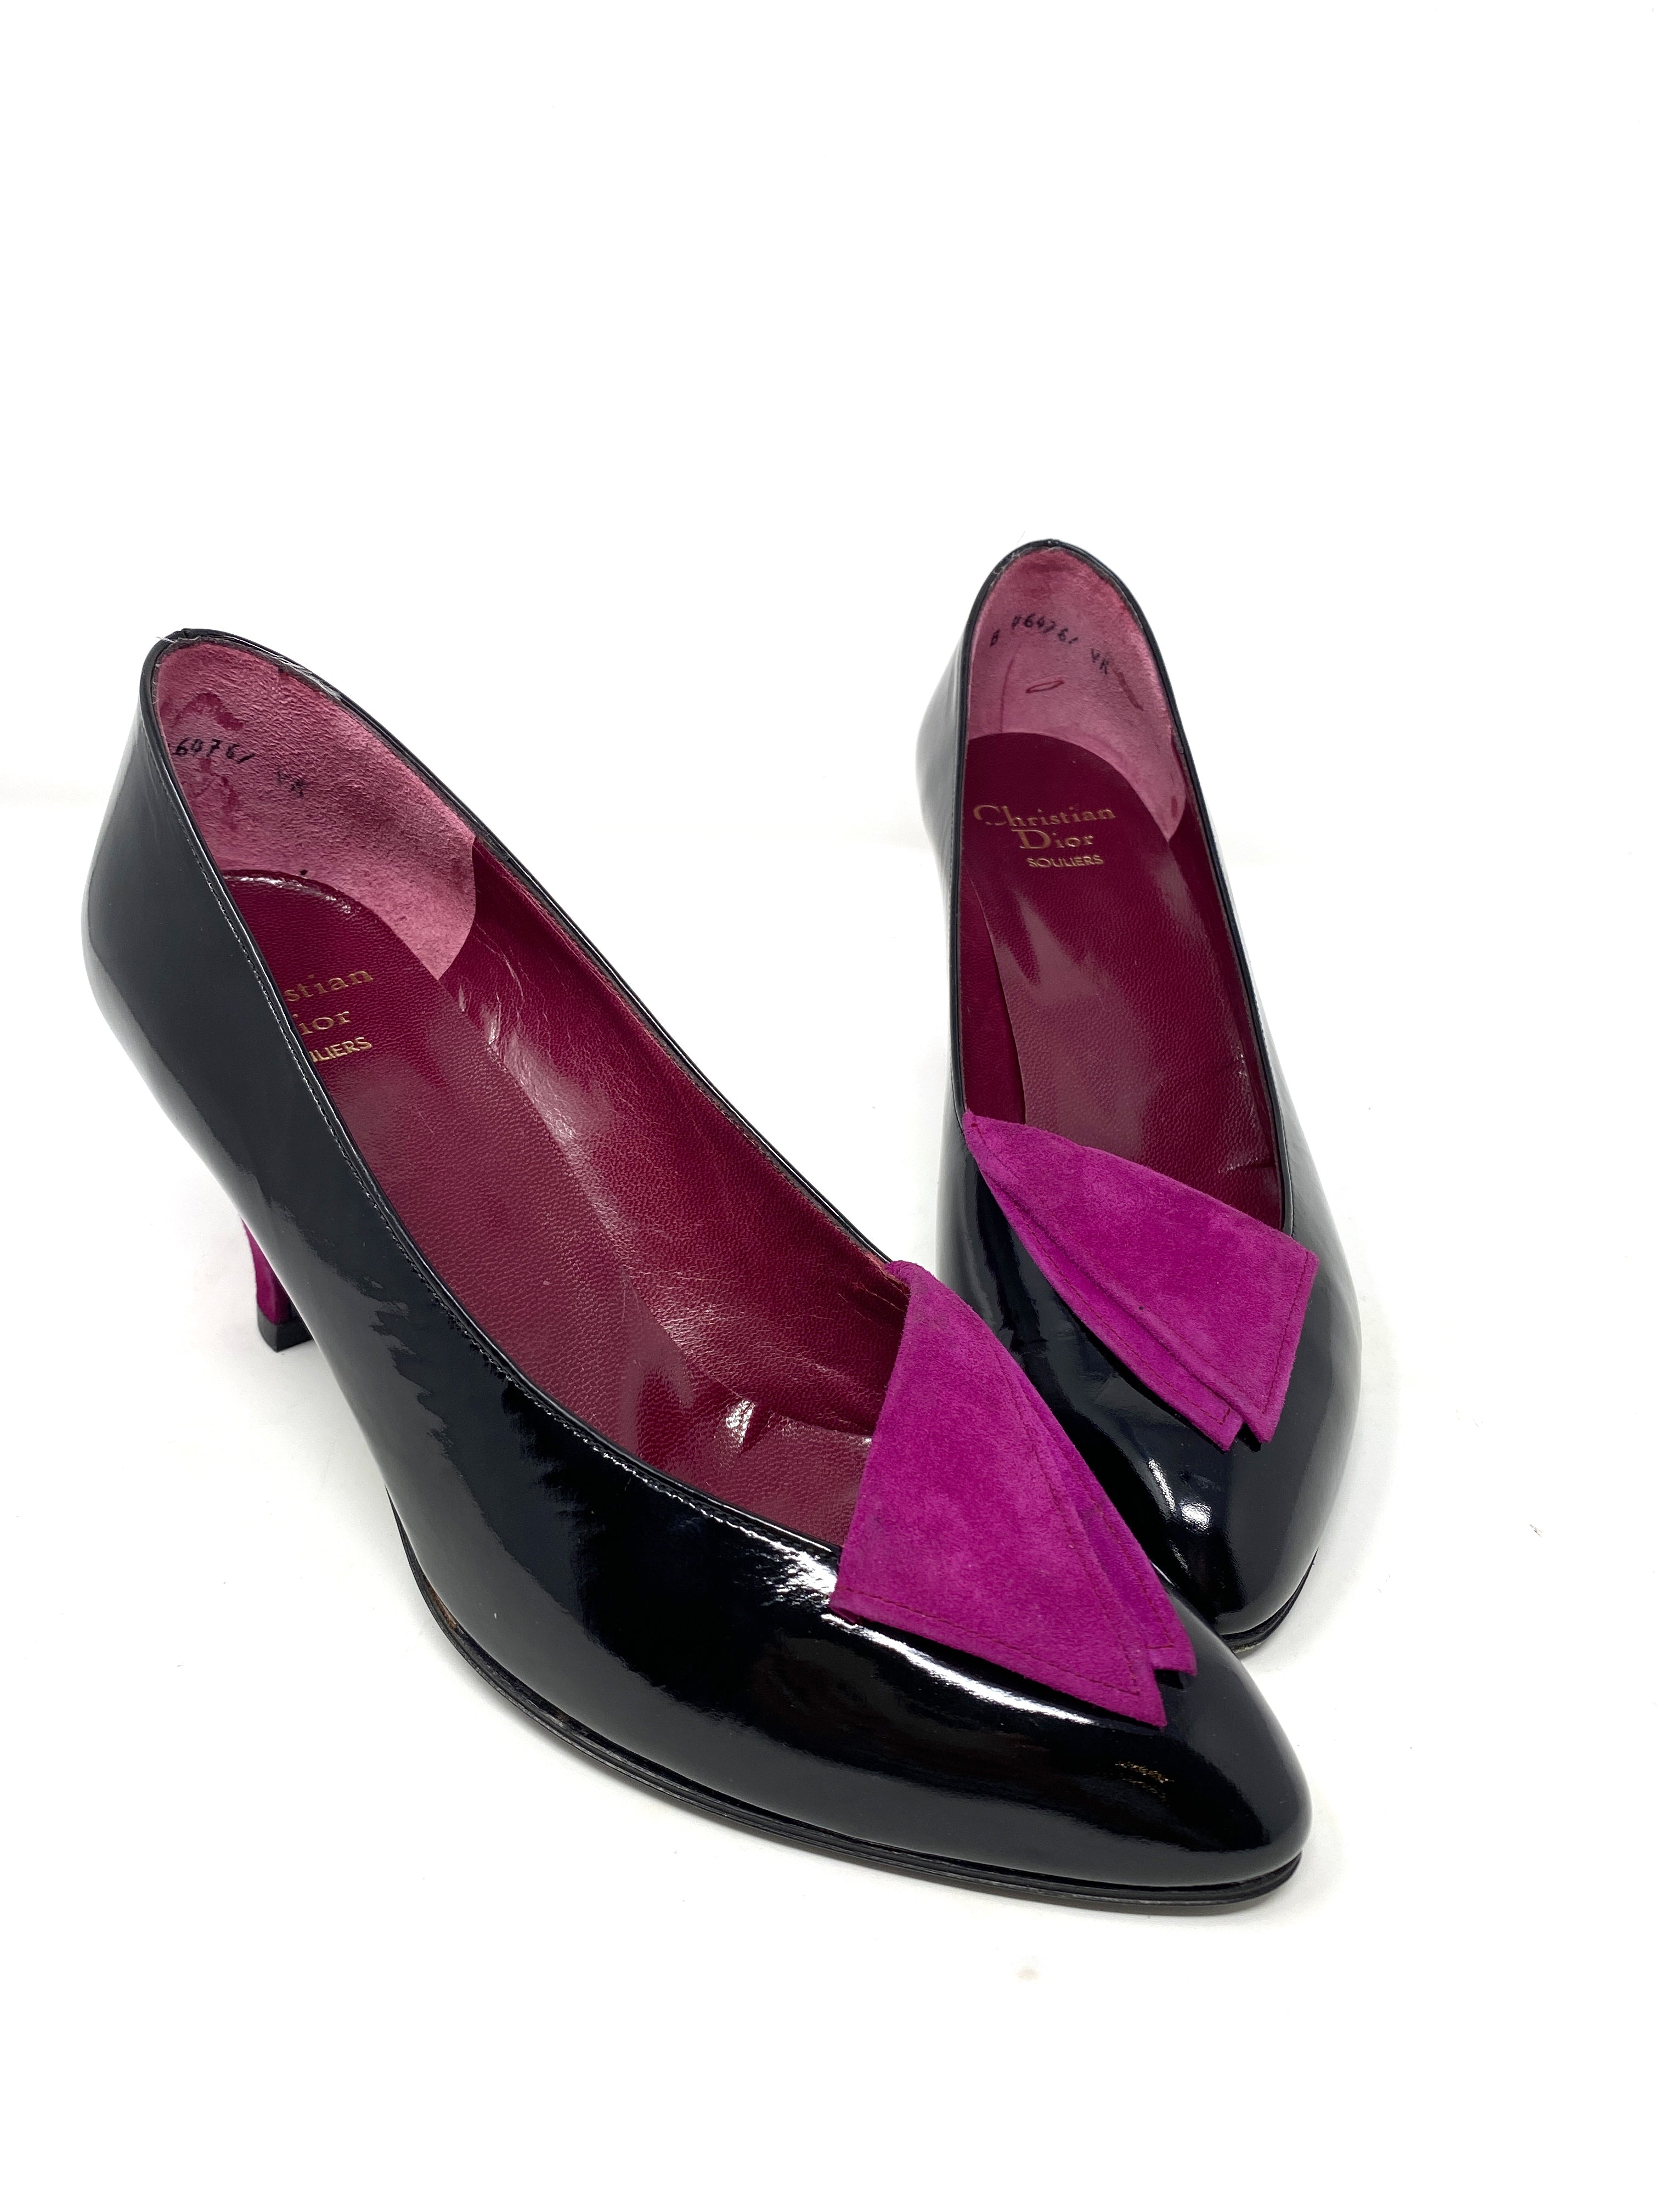 Vintage Christian Dior Souliers Black Shoes Pumps  Size 38 B From Paris   eBay